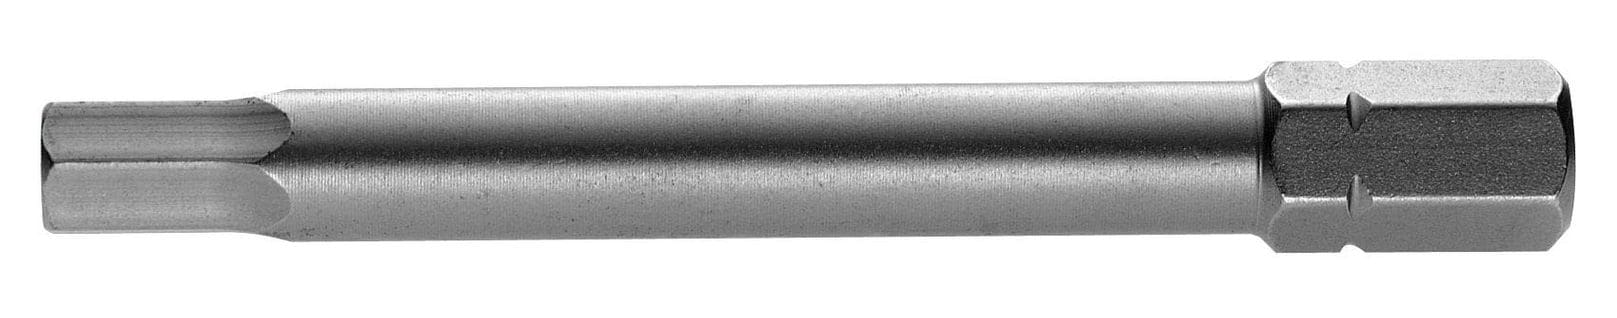 Embout 5/16'' 6 Pans 6 Mm Longueur 70mm Série 2 - Facom - Eh.206l